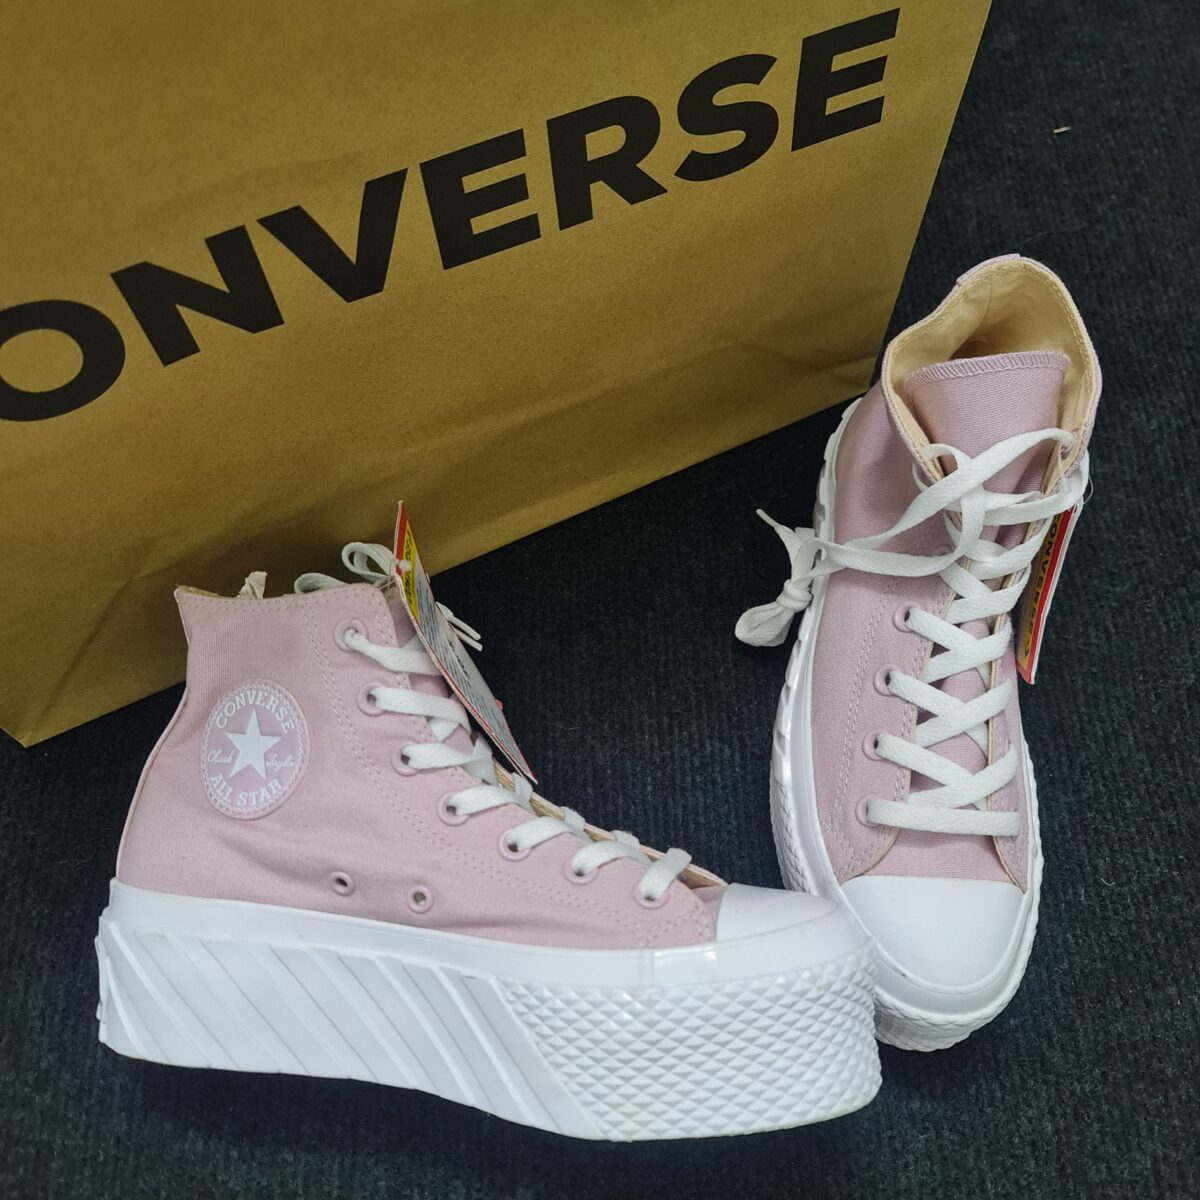 Sample  Giày Converse cổ cao đế độn nữ màu tím hồng size 37.5 | Lazada.vn